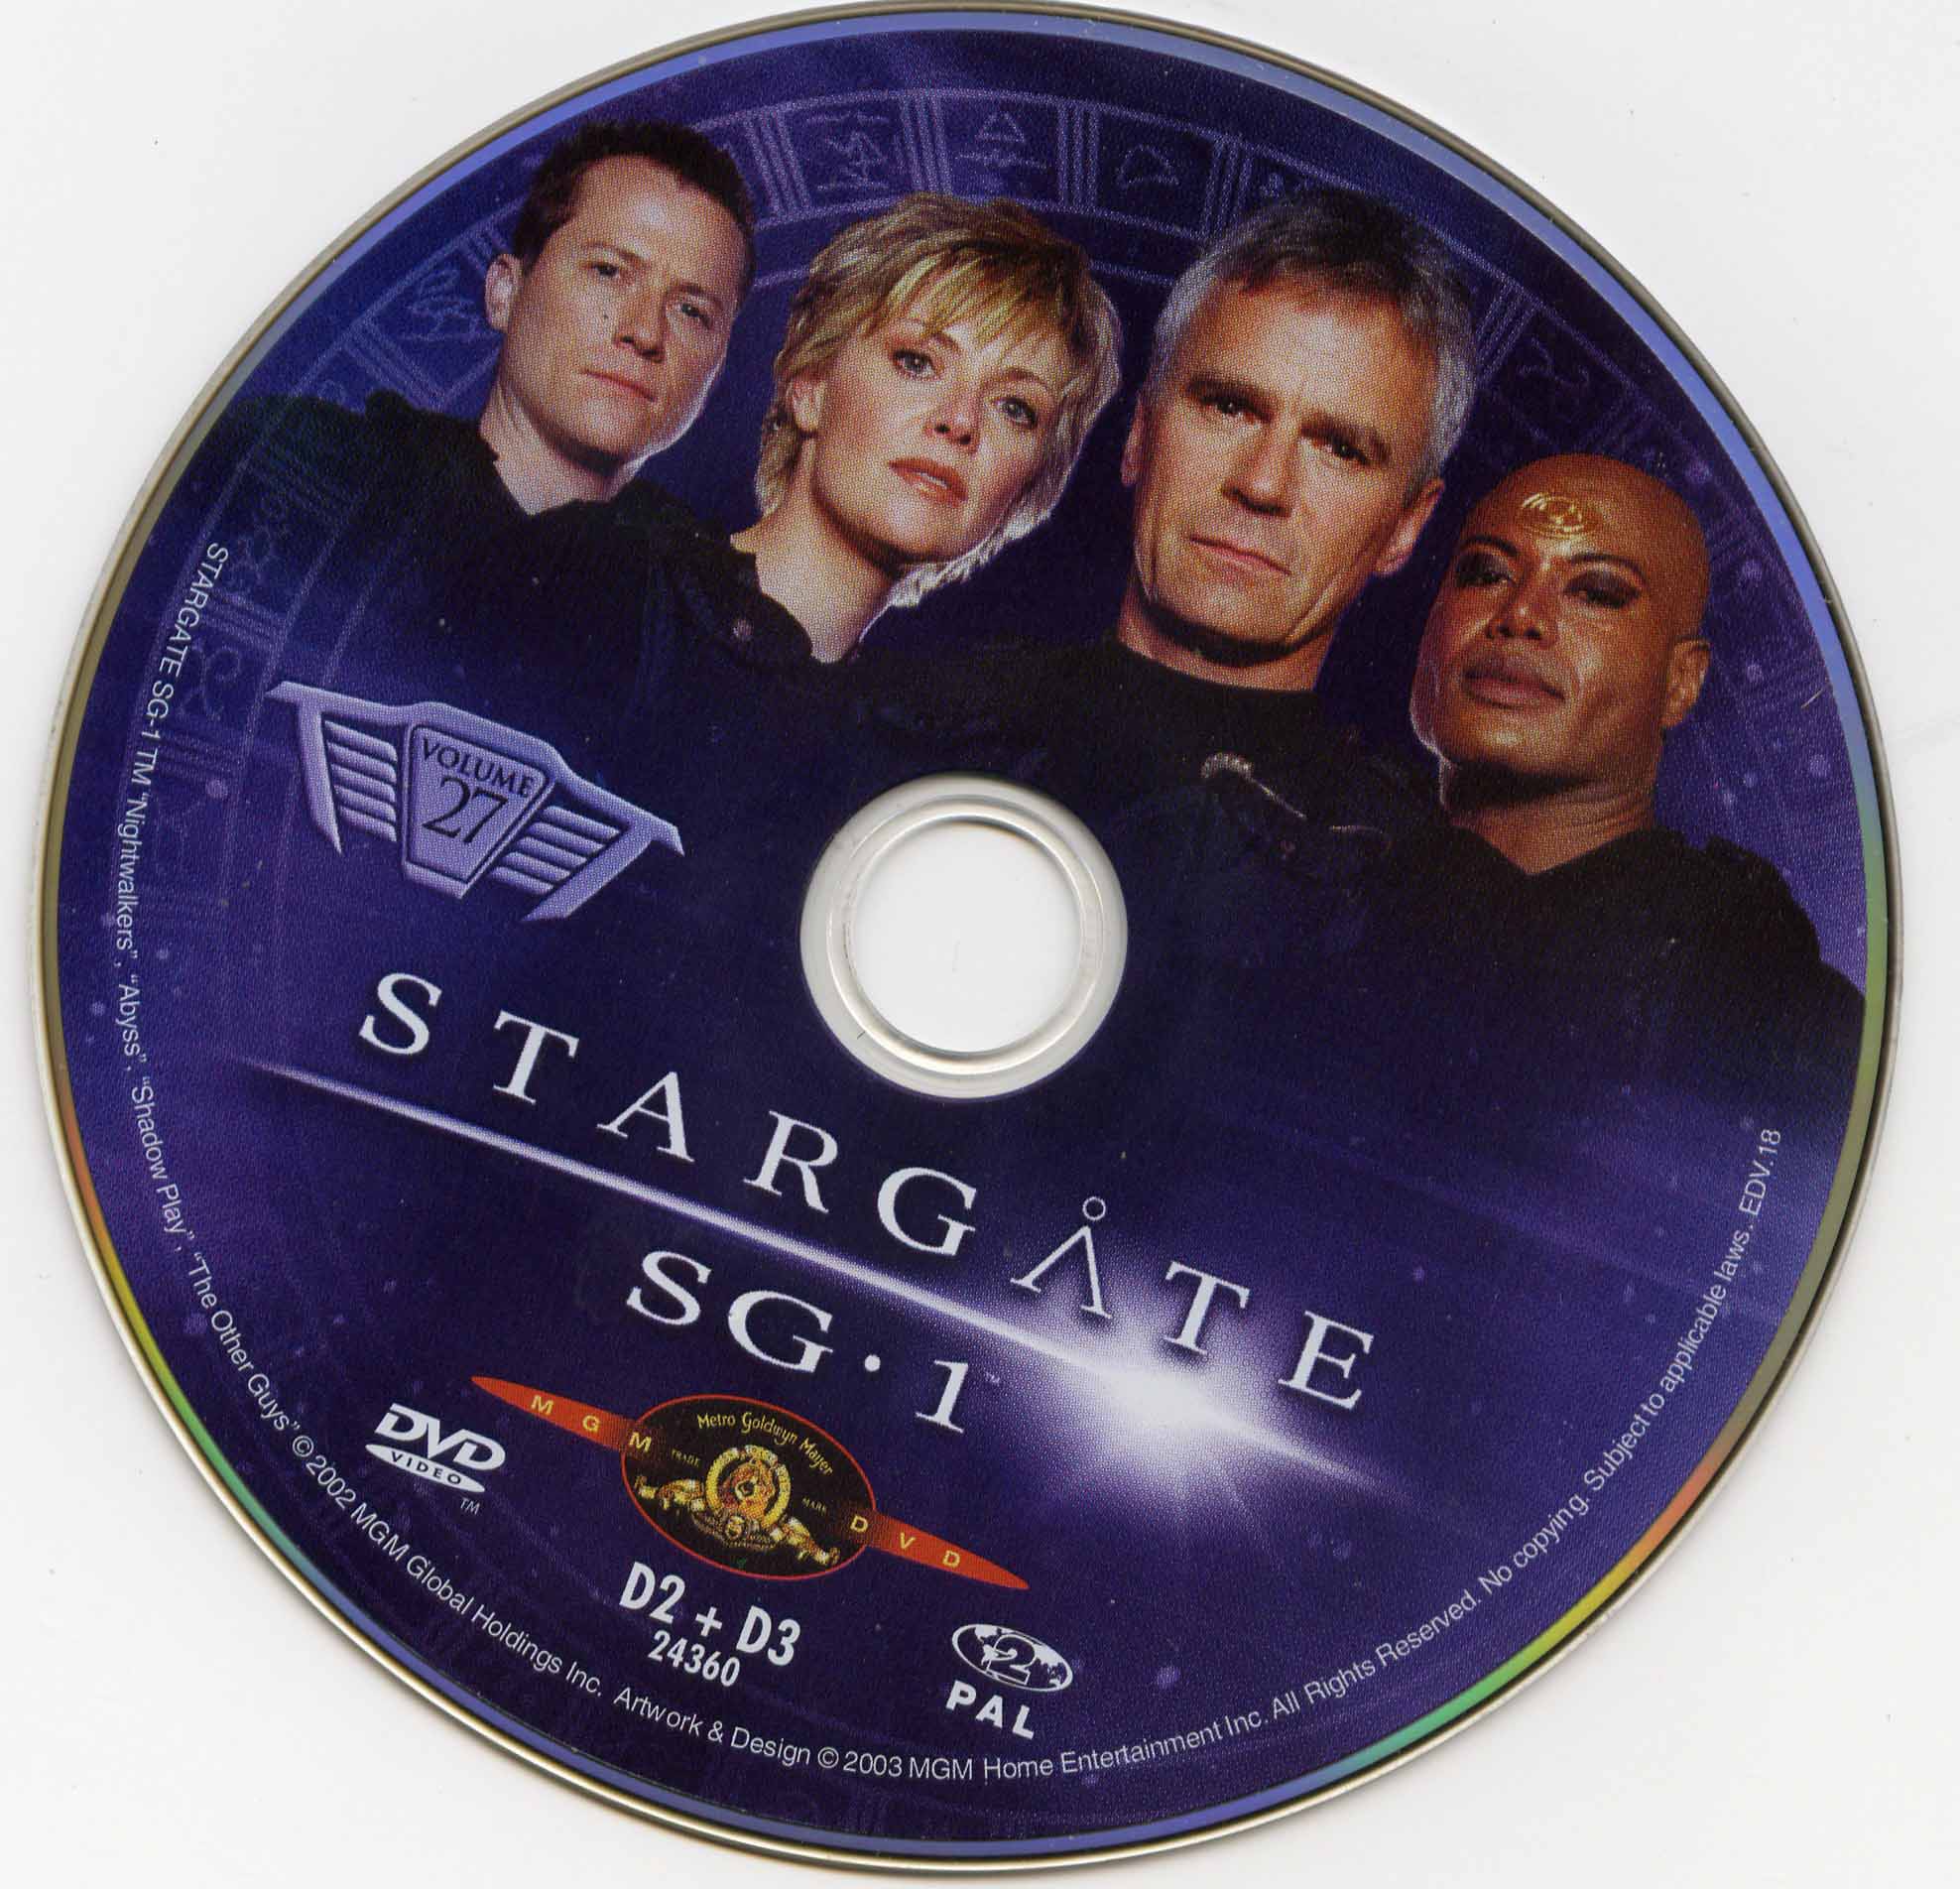 Stargate SG1 vol 27